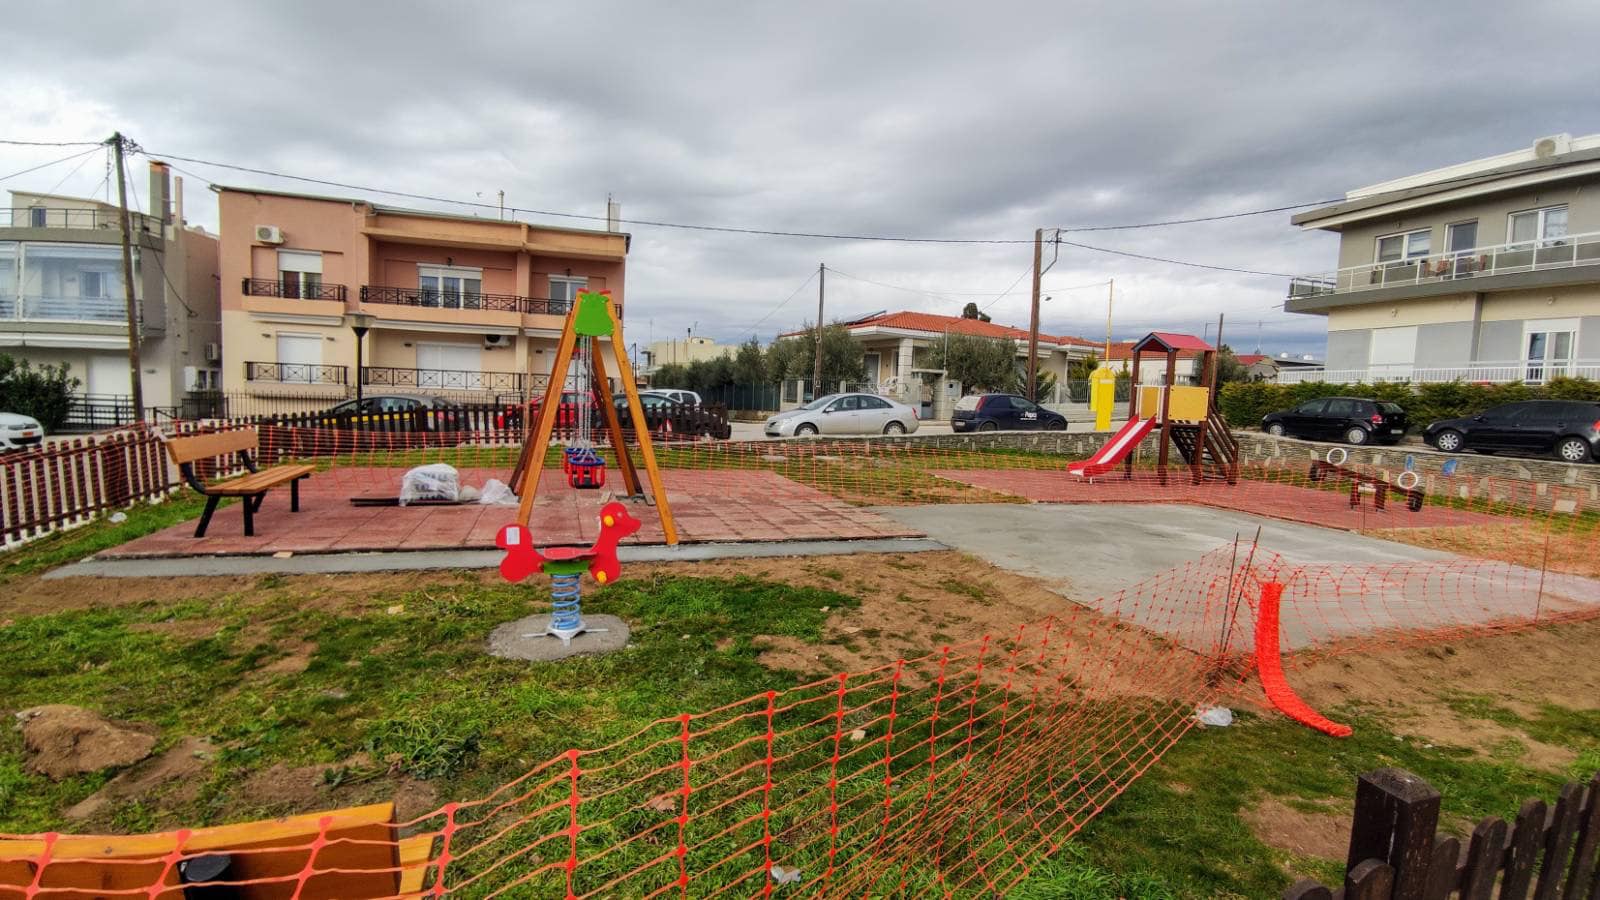 Σε εξέλιξη η ανακατασκευή συνολικά 79 παιδικών χαρών στο Δήμο Αλεξανδρούπολης